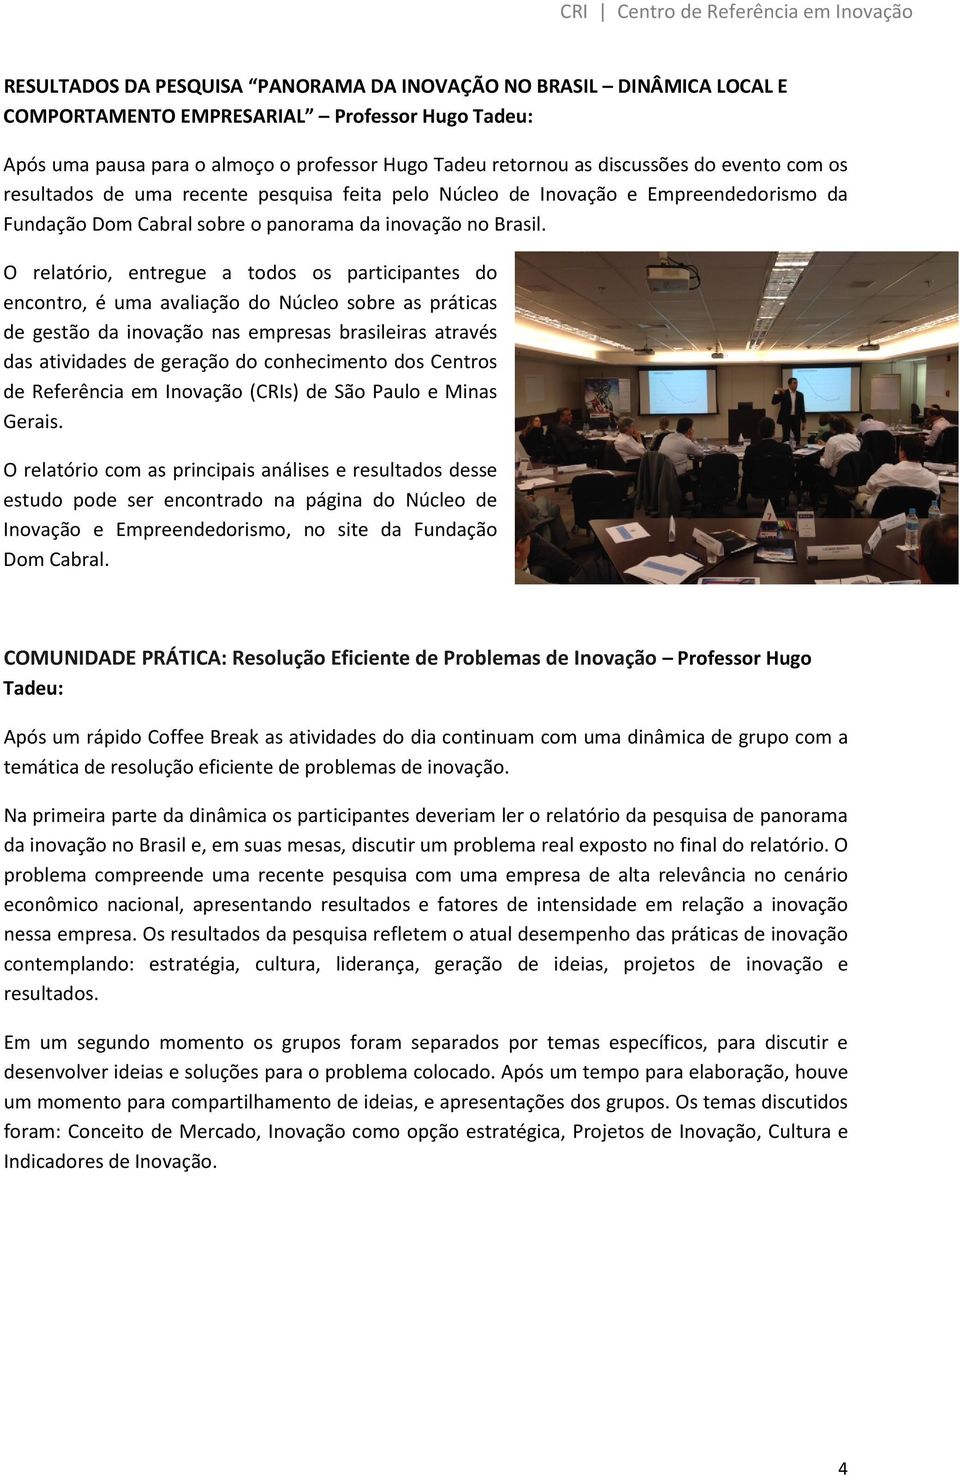 O relatório, entregue a todos os participantes do encontro, é uma avaliação do Núcleo sobre as práticas de gestão da inovação nas empresas brasileiras através das atividades de geração do